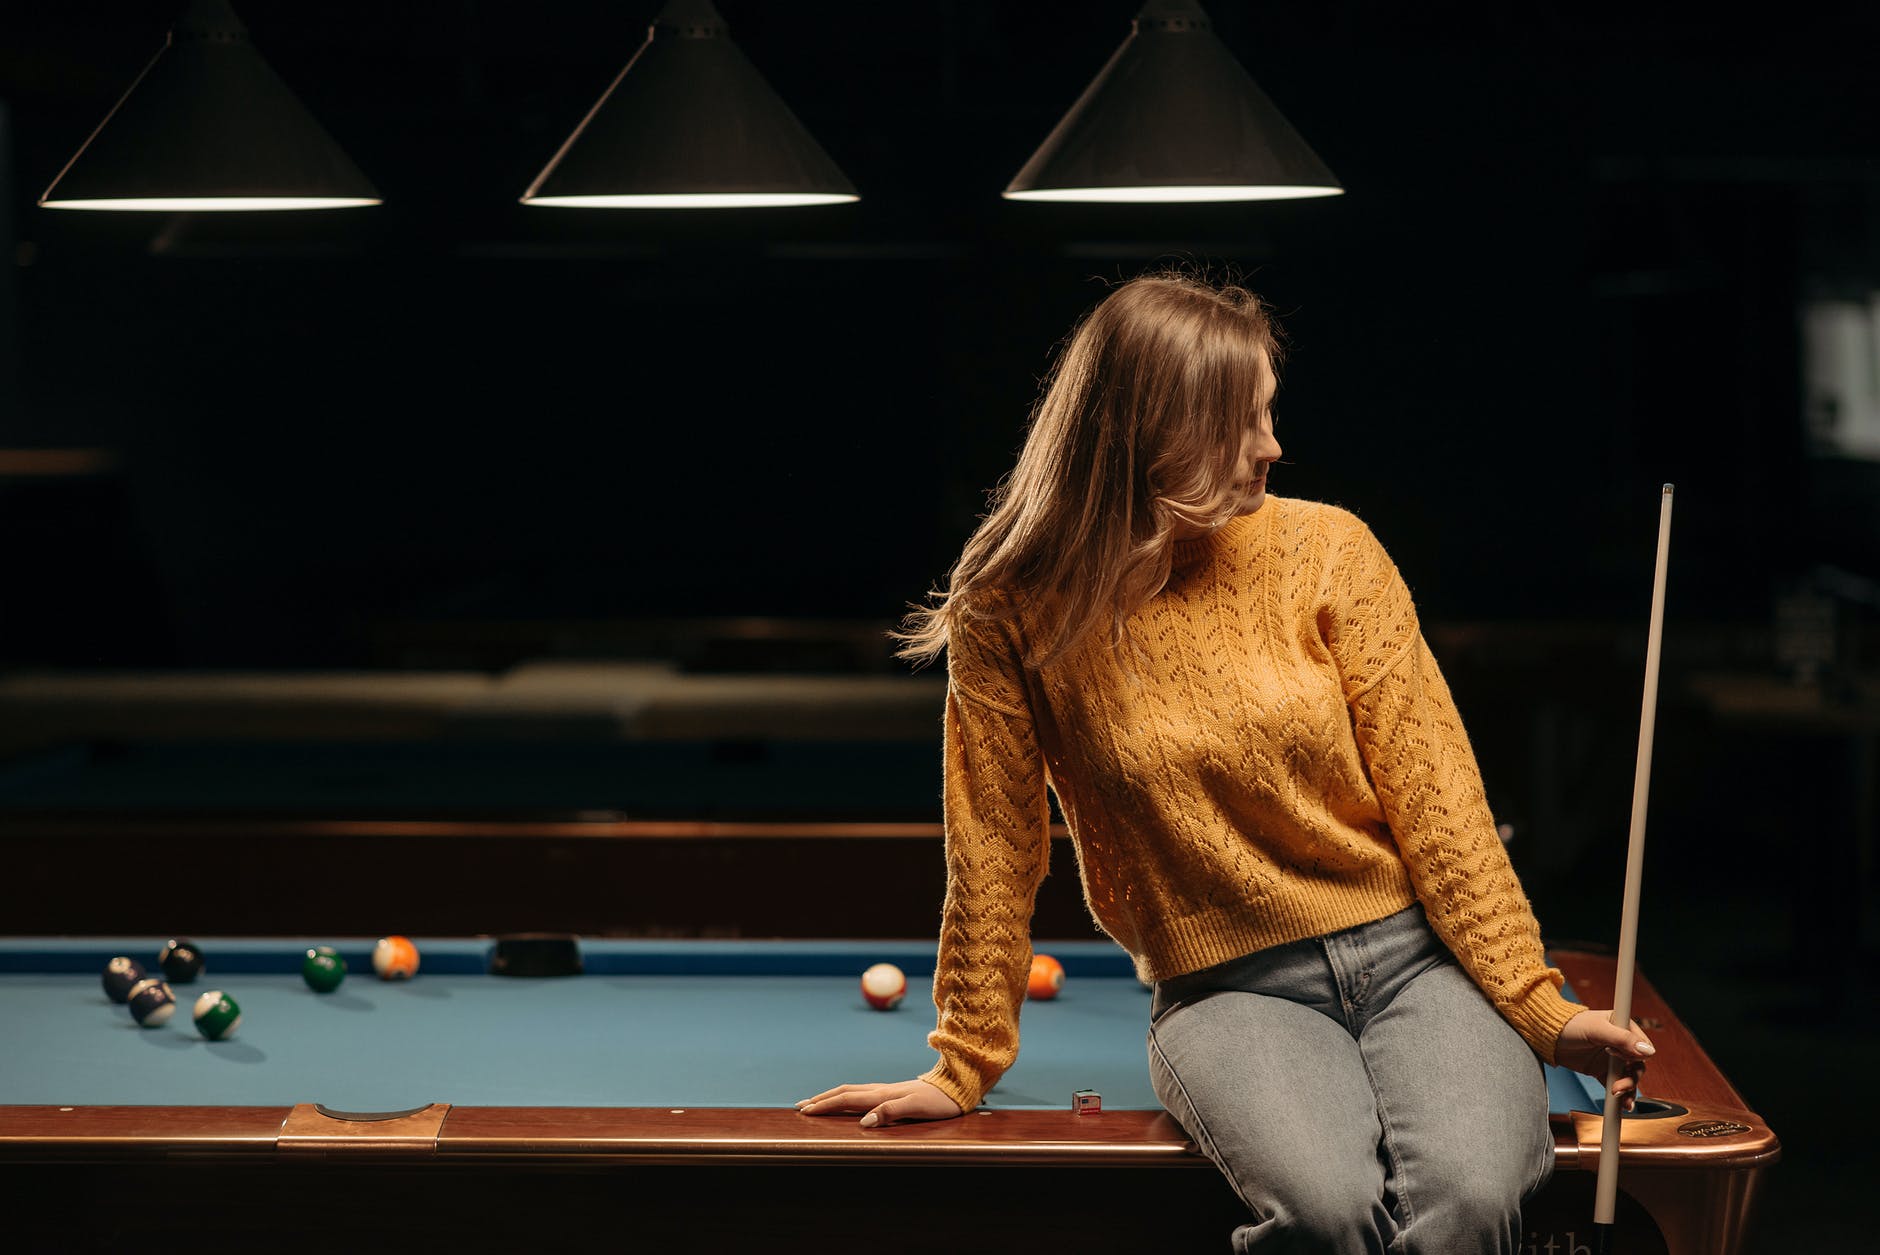 a woman on a billiard table